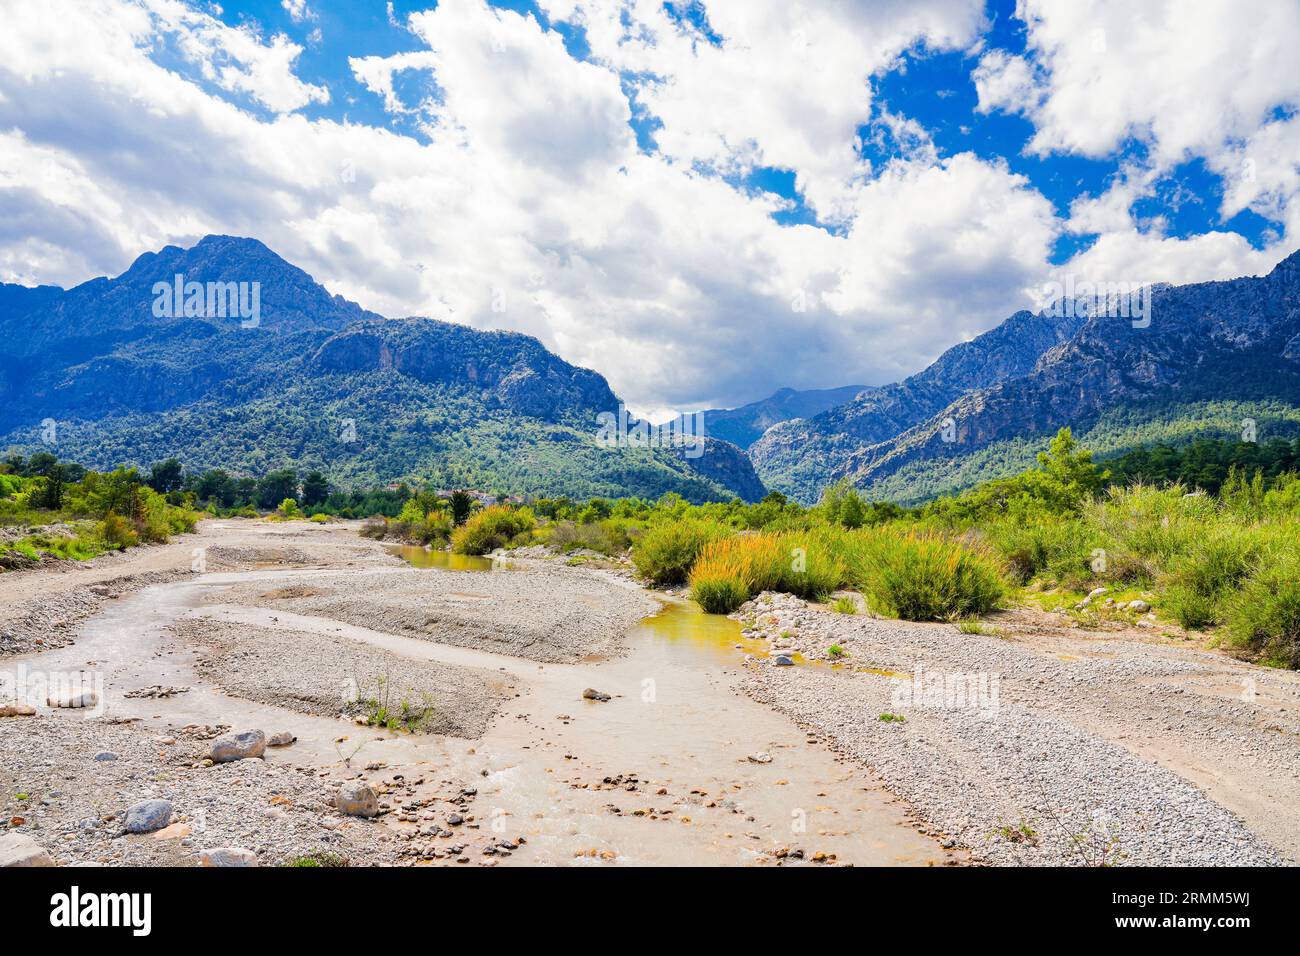 Letto del fiume con le montagne del Tauro sullo sfondo. Paesaggio in Turchia. Foto Stock